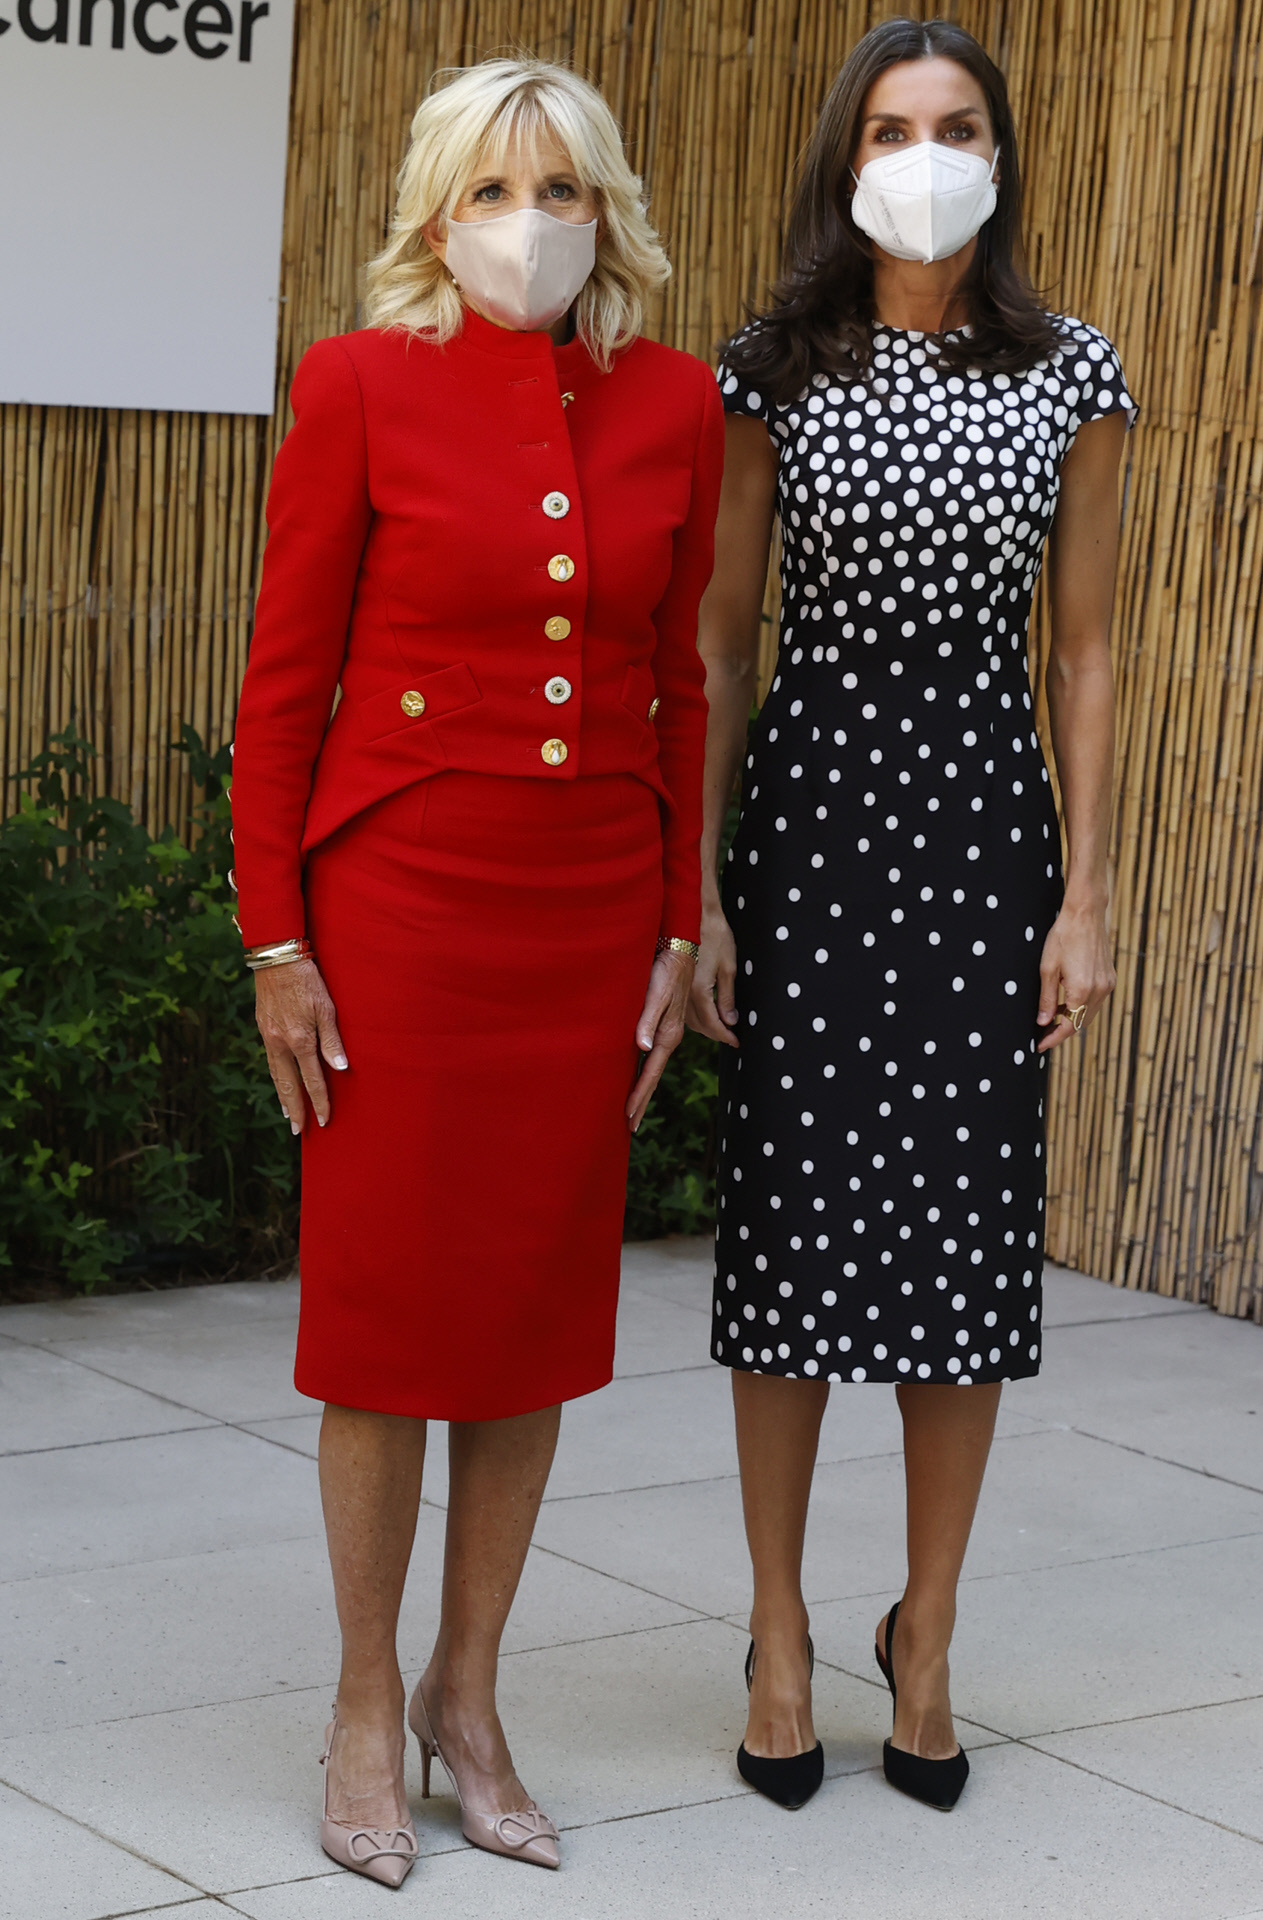 La reina Letizia con un vestido de lunares de José Hidalgo en su encuentro en Madrid con Jill Biden.